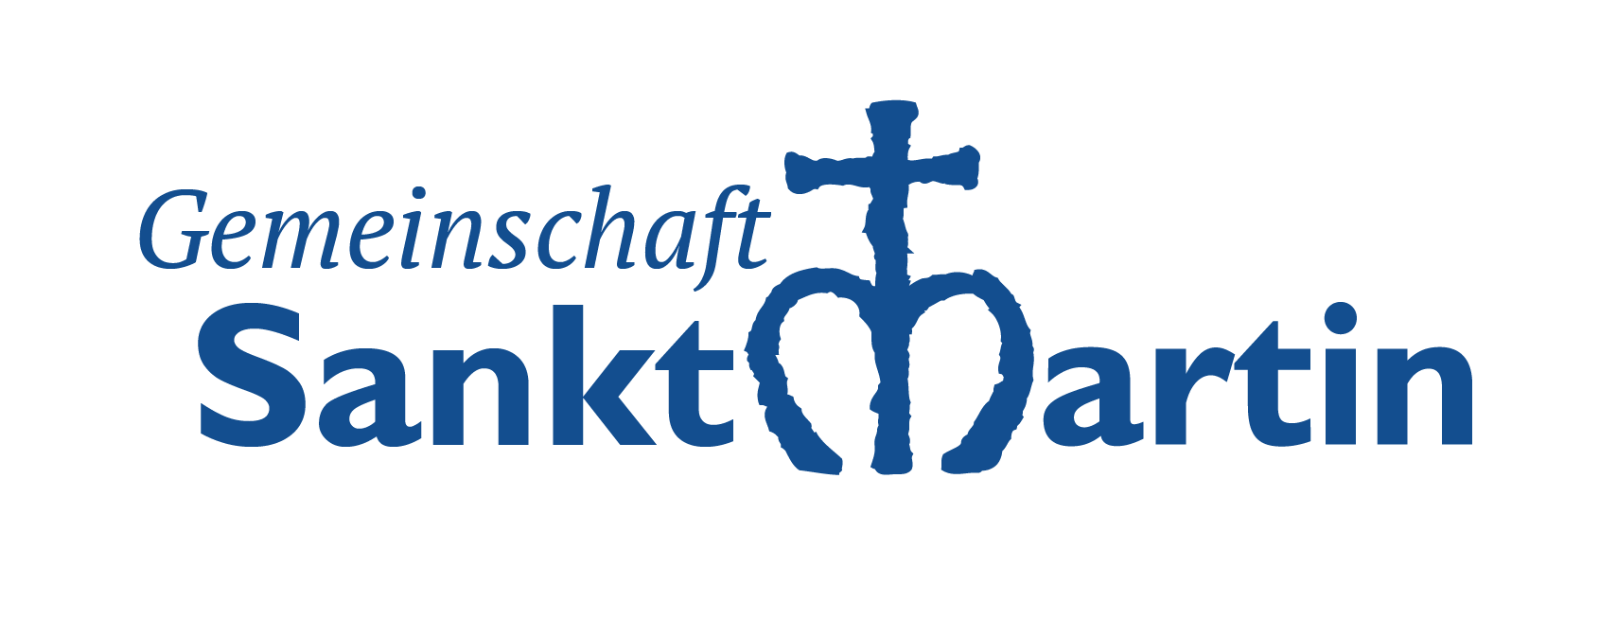 CSM-logo-deutsch-blau